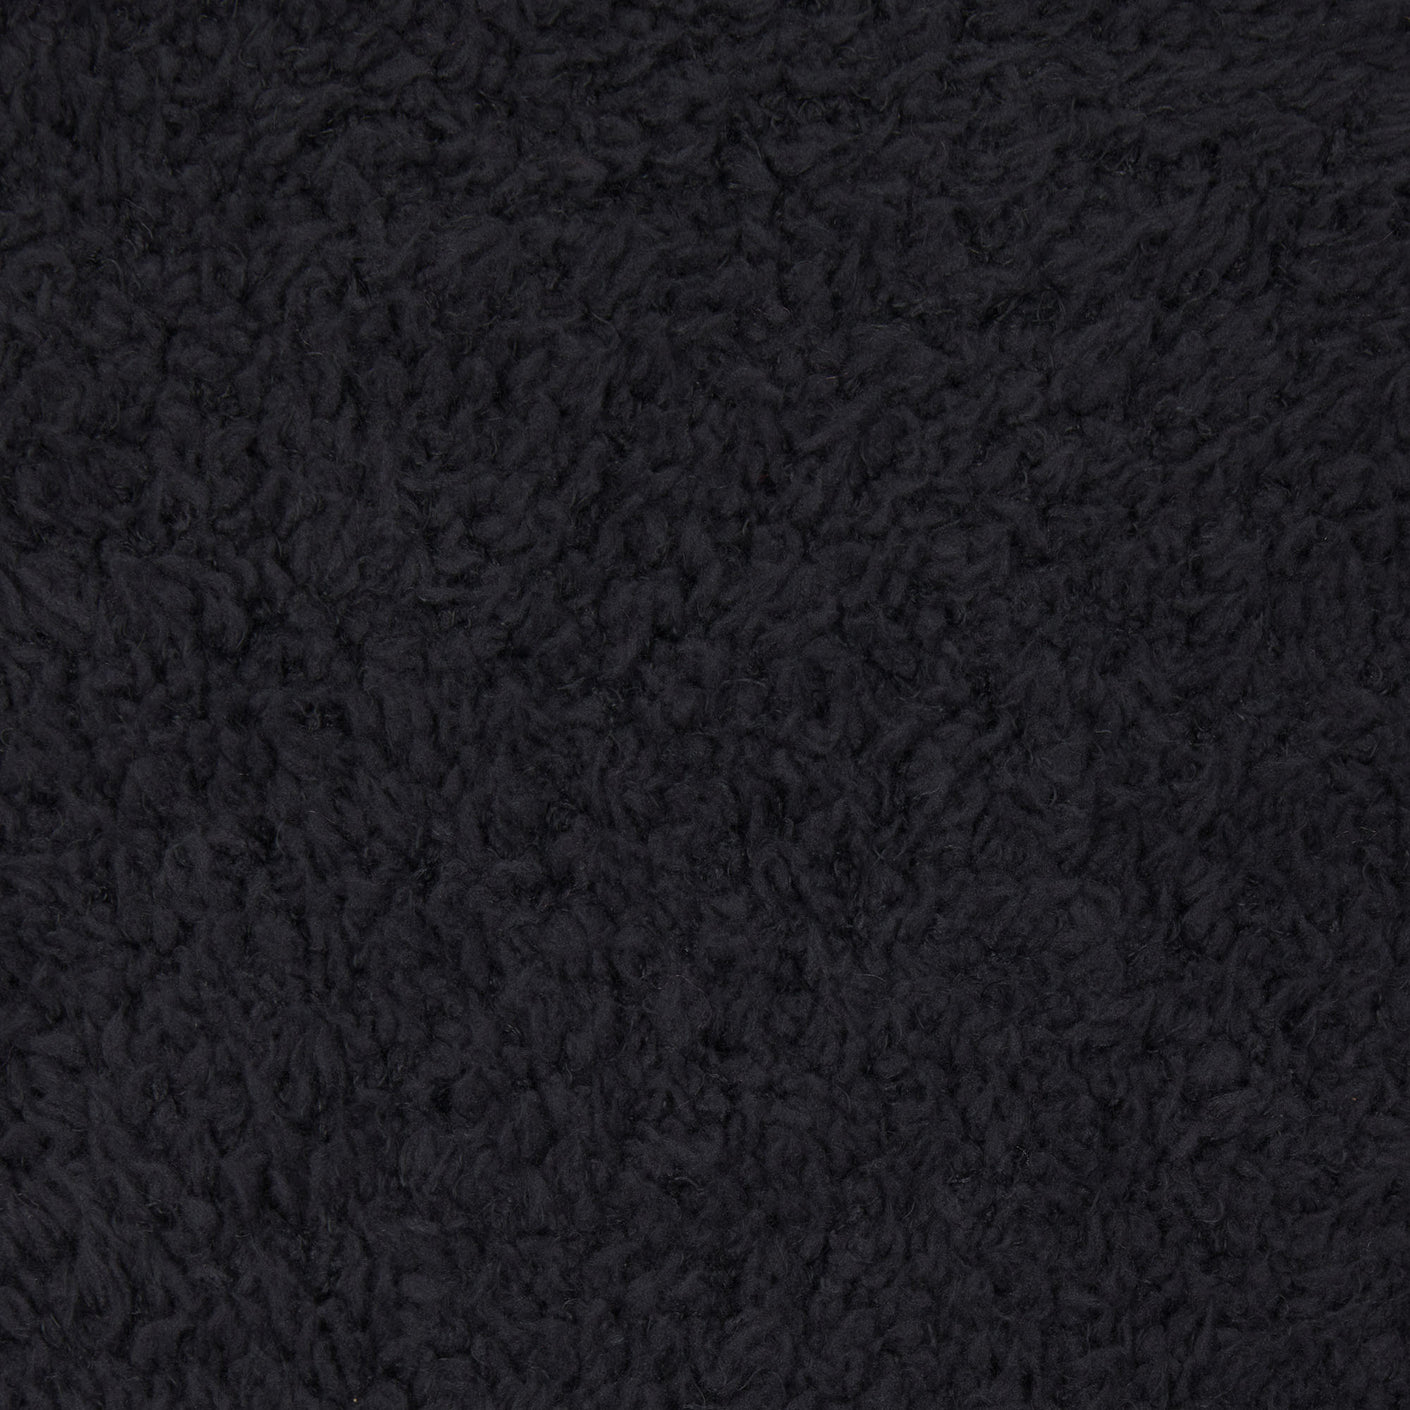 Skims Cozy Knit Jogger Pants Black Onyx Plus Size 2X 3X Fuzzy